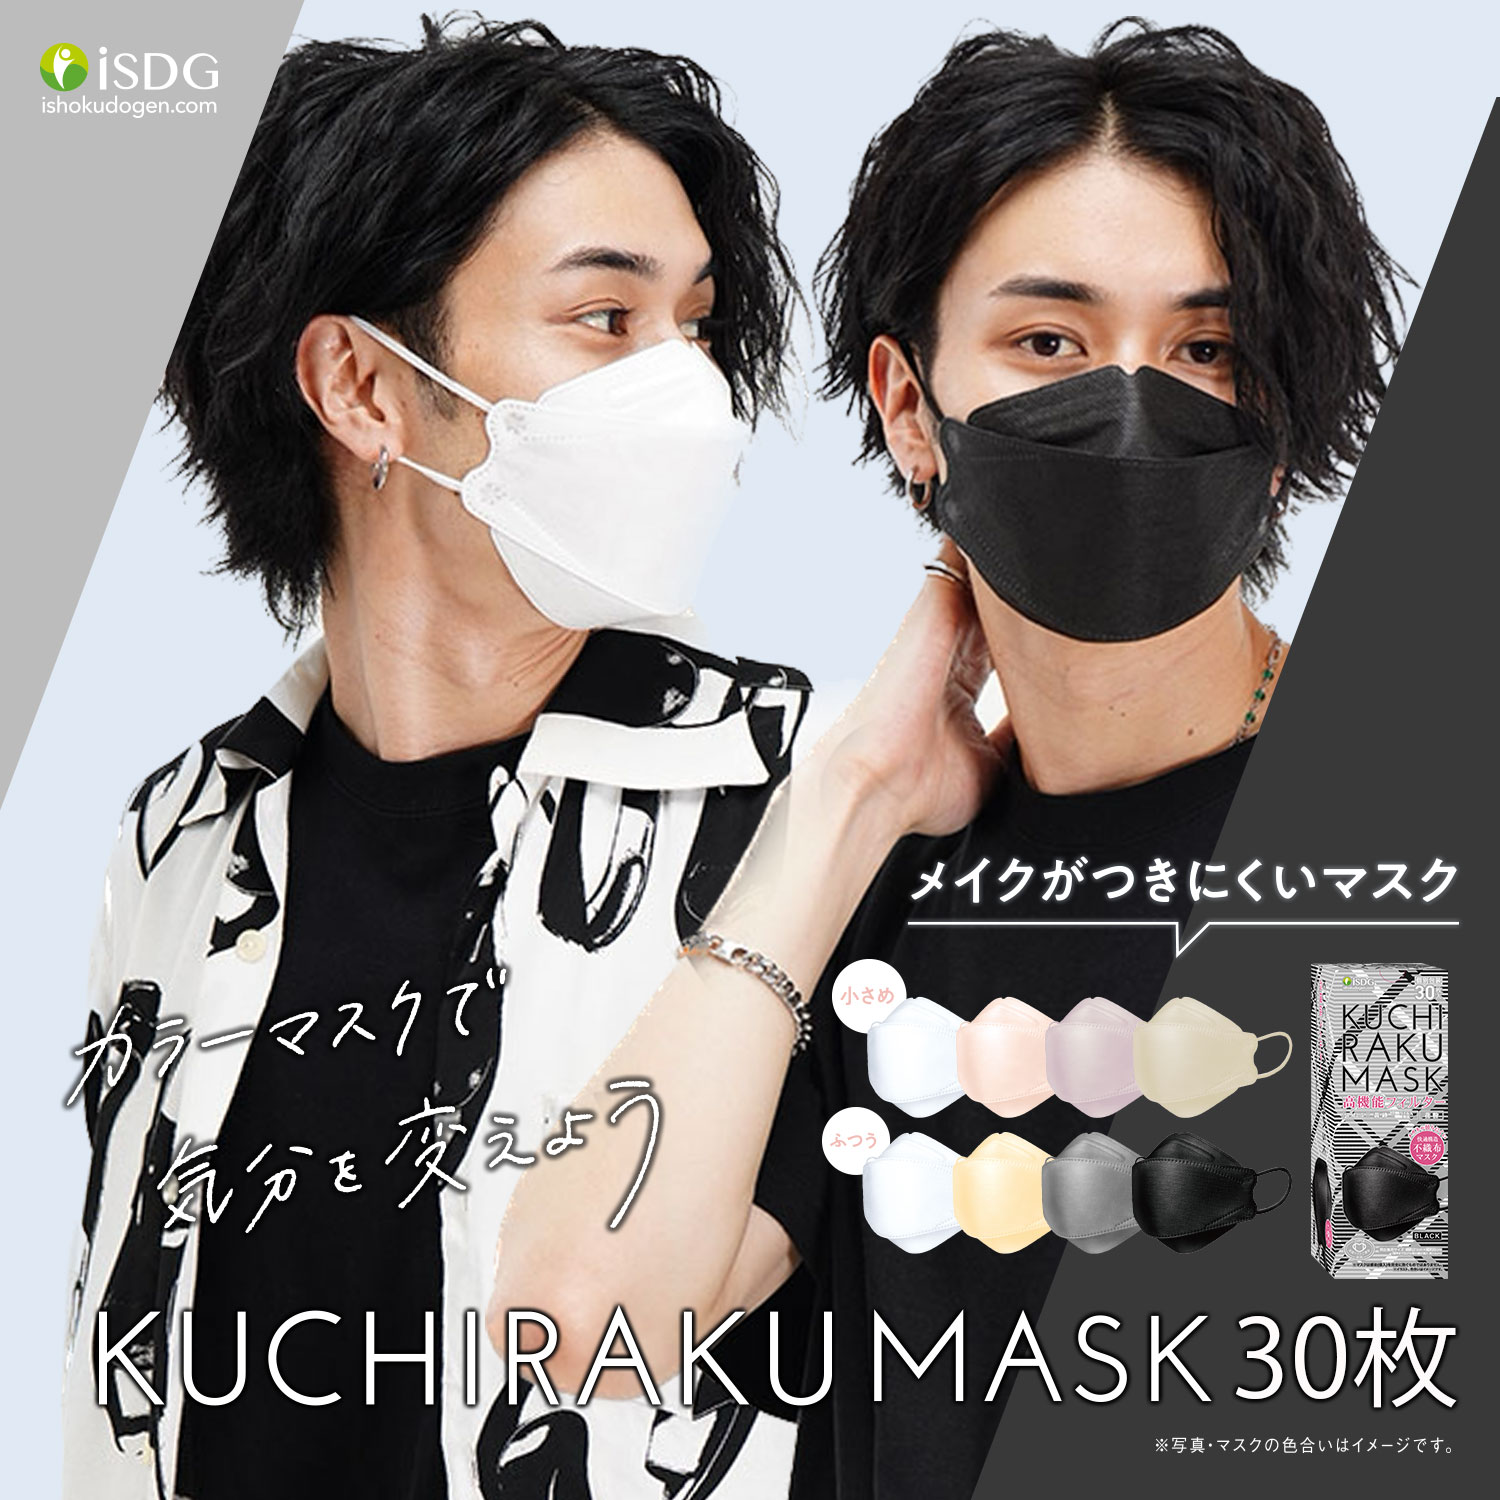 KUCHIRAKU MASK 30枚入 不織布マスク くちばし型マスク おしゃれマスク クチラクマスク KUCHIRAKU 3層構造 クチバシマスク  当日発送 :kuchiraku-mask-30:ISDG 医食同源ドットコム 通販 